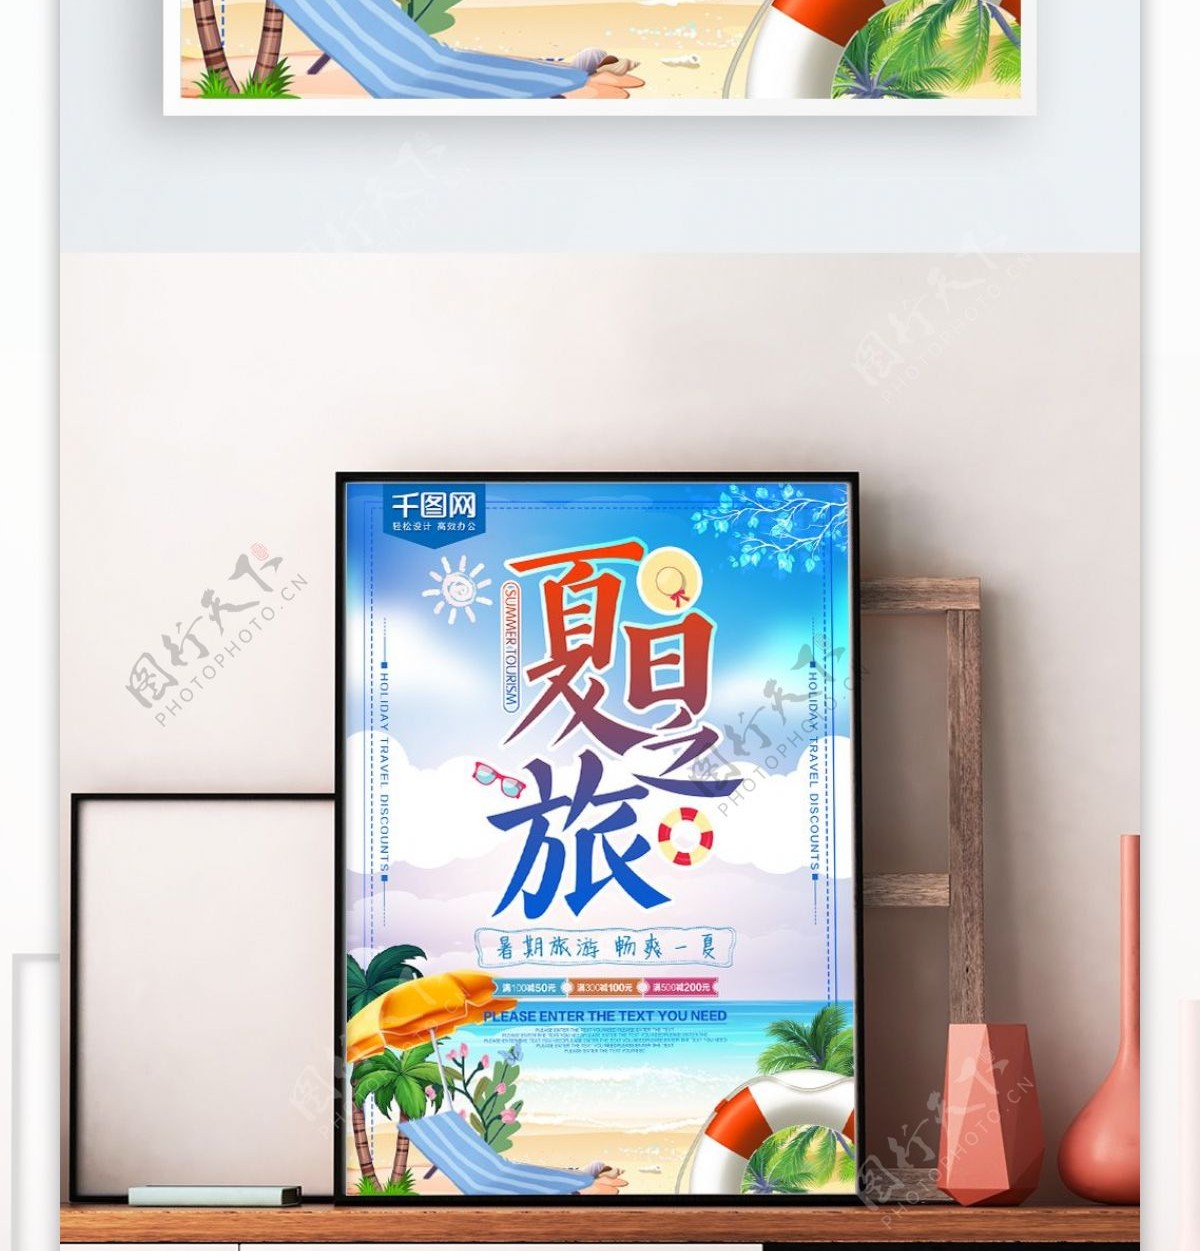 清新蓝色大气夏日之旅旅游海报